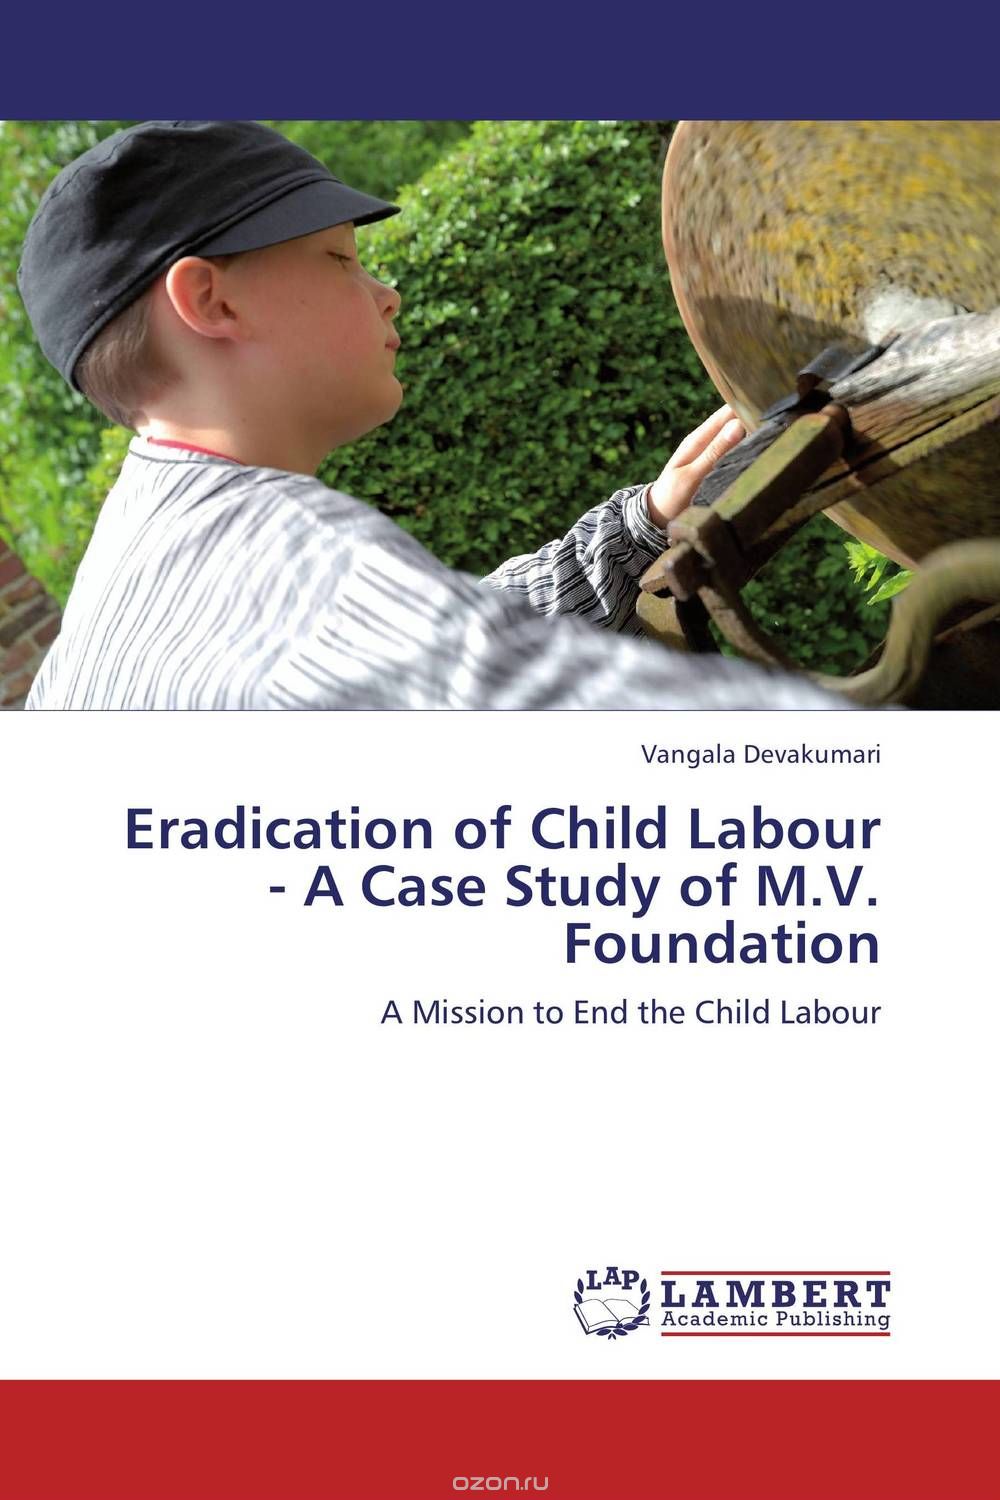 Скачать книгу "Eradication of Child Labour - A Case Study of M.V. Foundation"